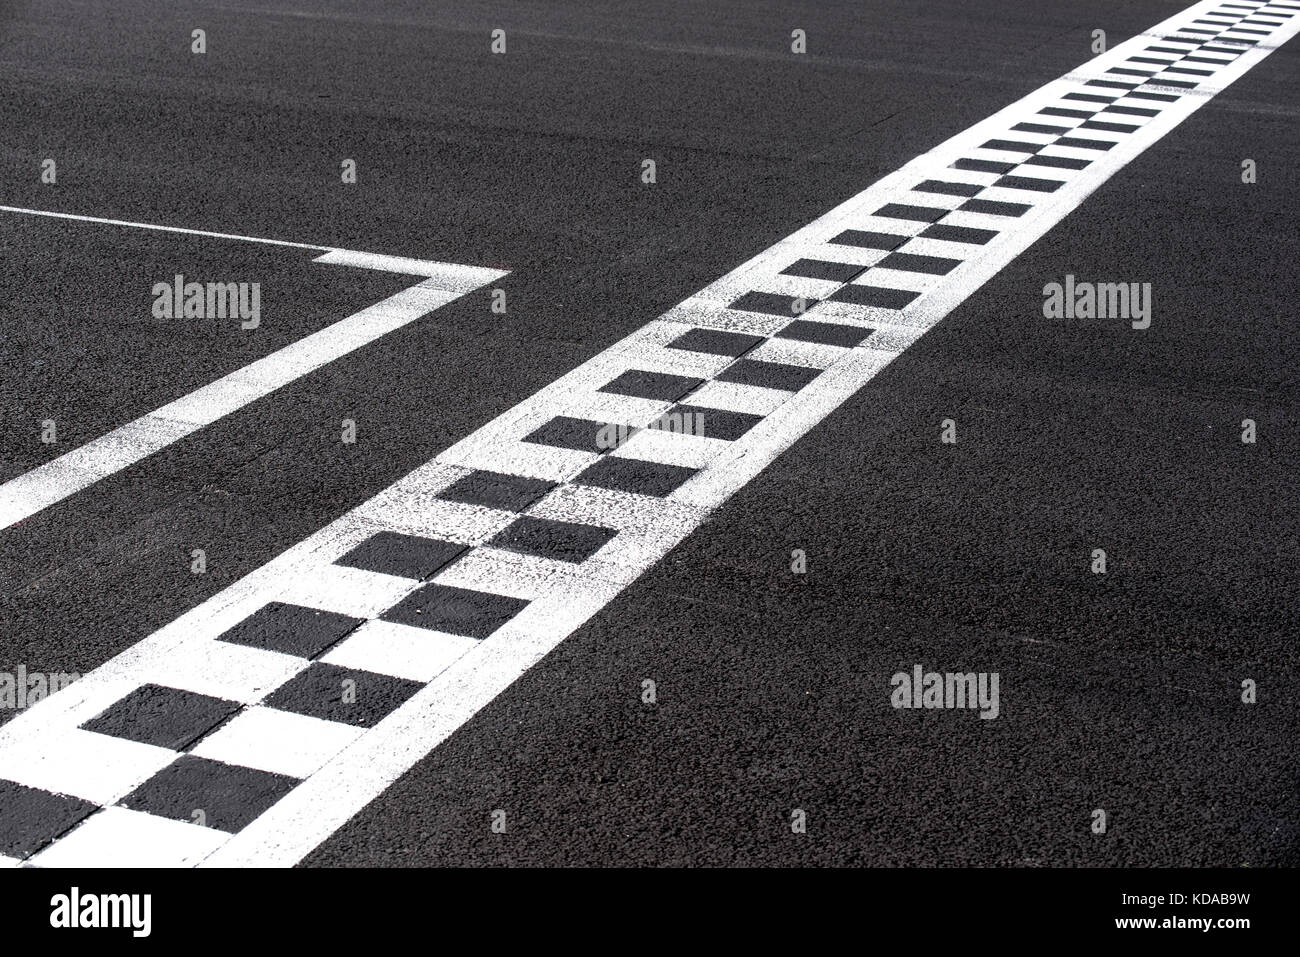 A scacchi la linea di finitura su asfalto motorsport racing via concetto di obiettivo, conseguimento, il successo Foto Stock